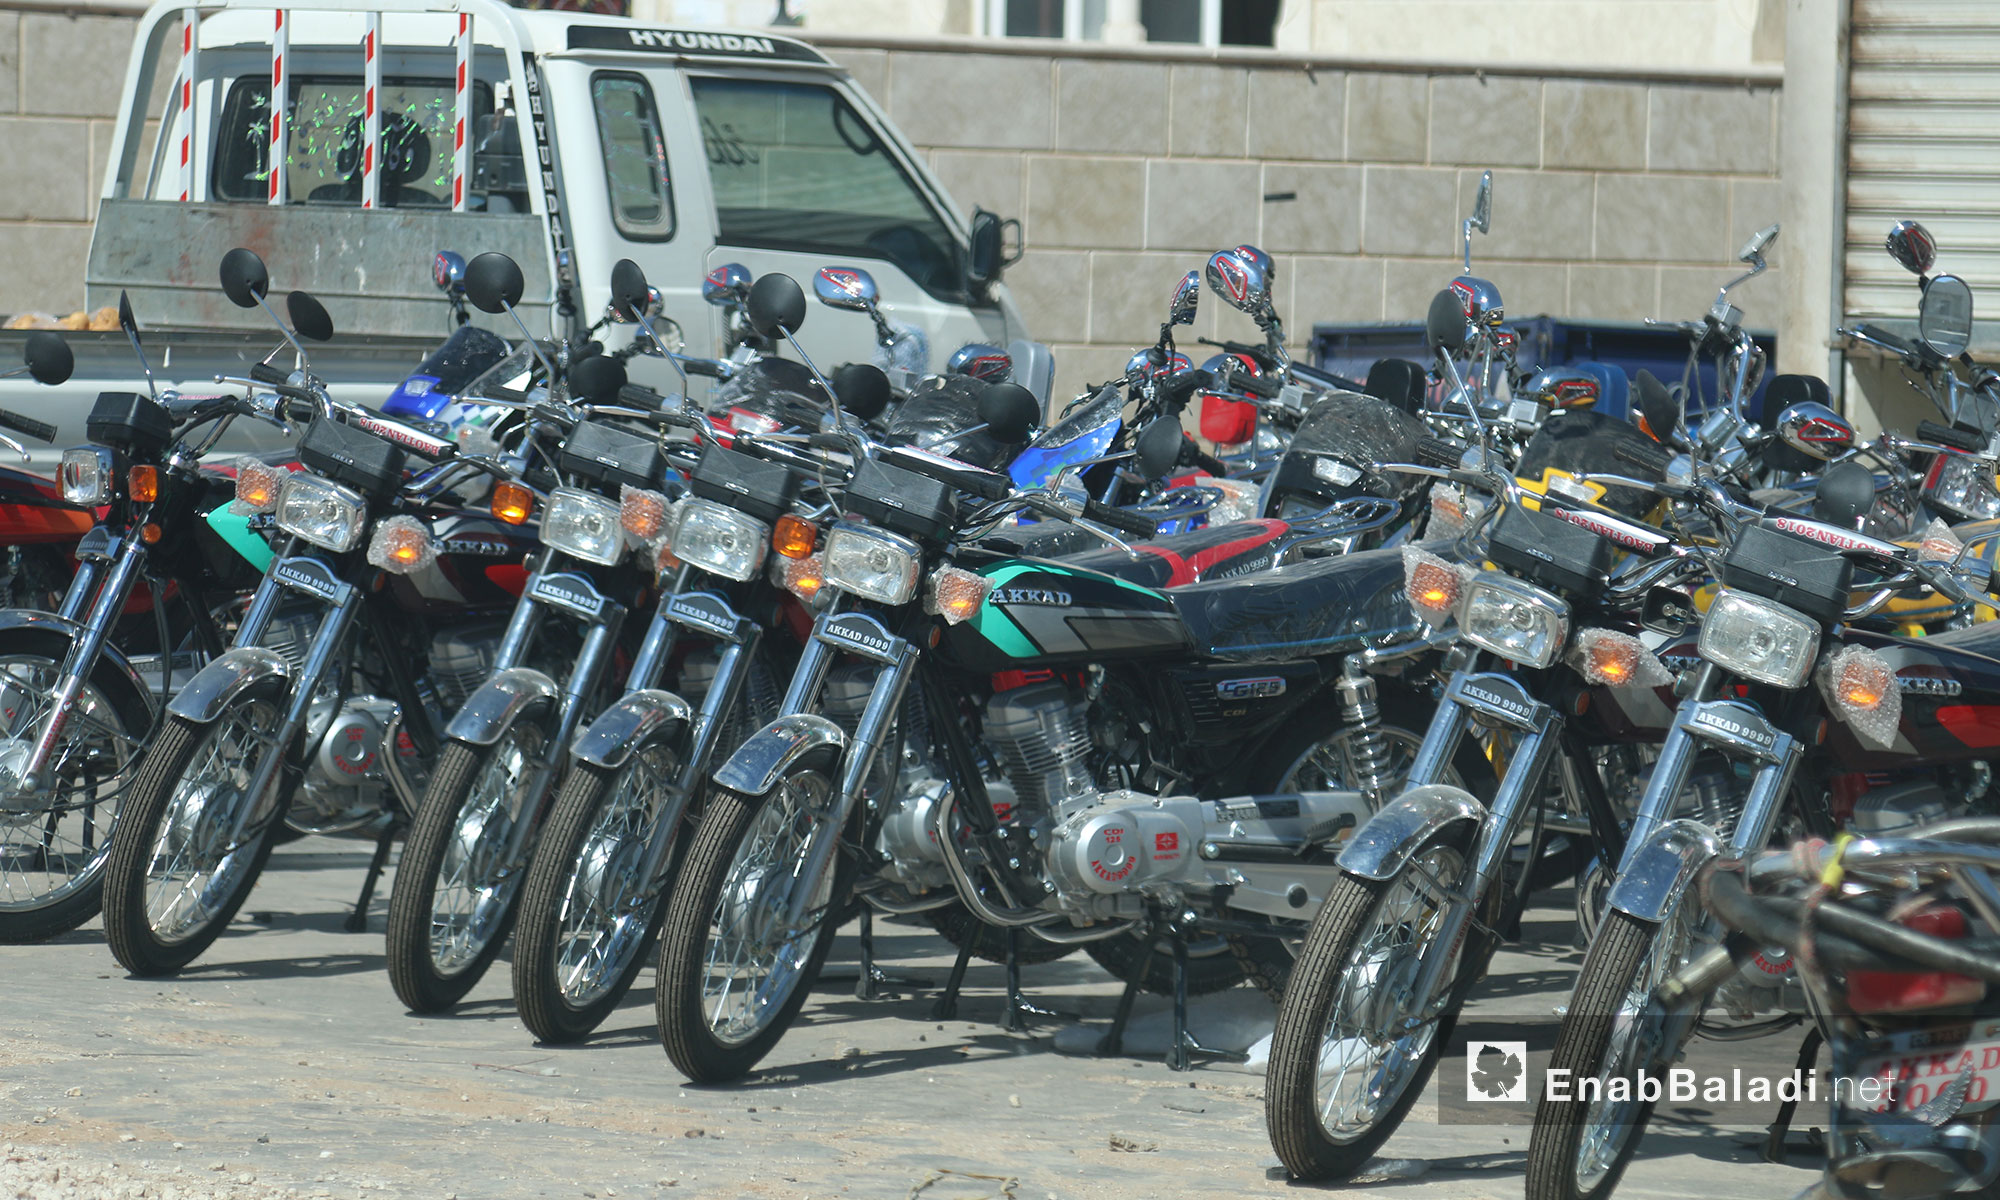 محل بيع الدراجات النارية الجديدة والمستعملة في سرمدا بإدلب - 12 حزيران 2017 (عنب بلدي)